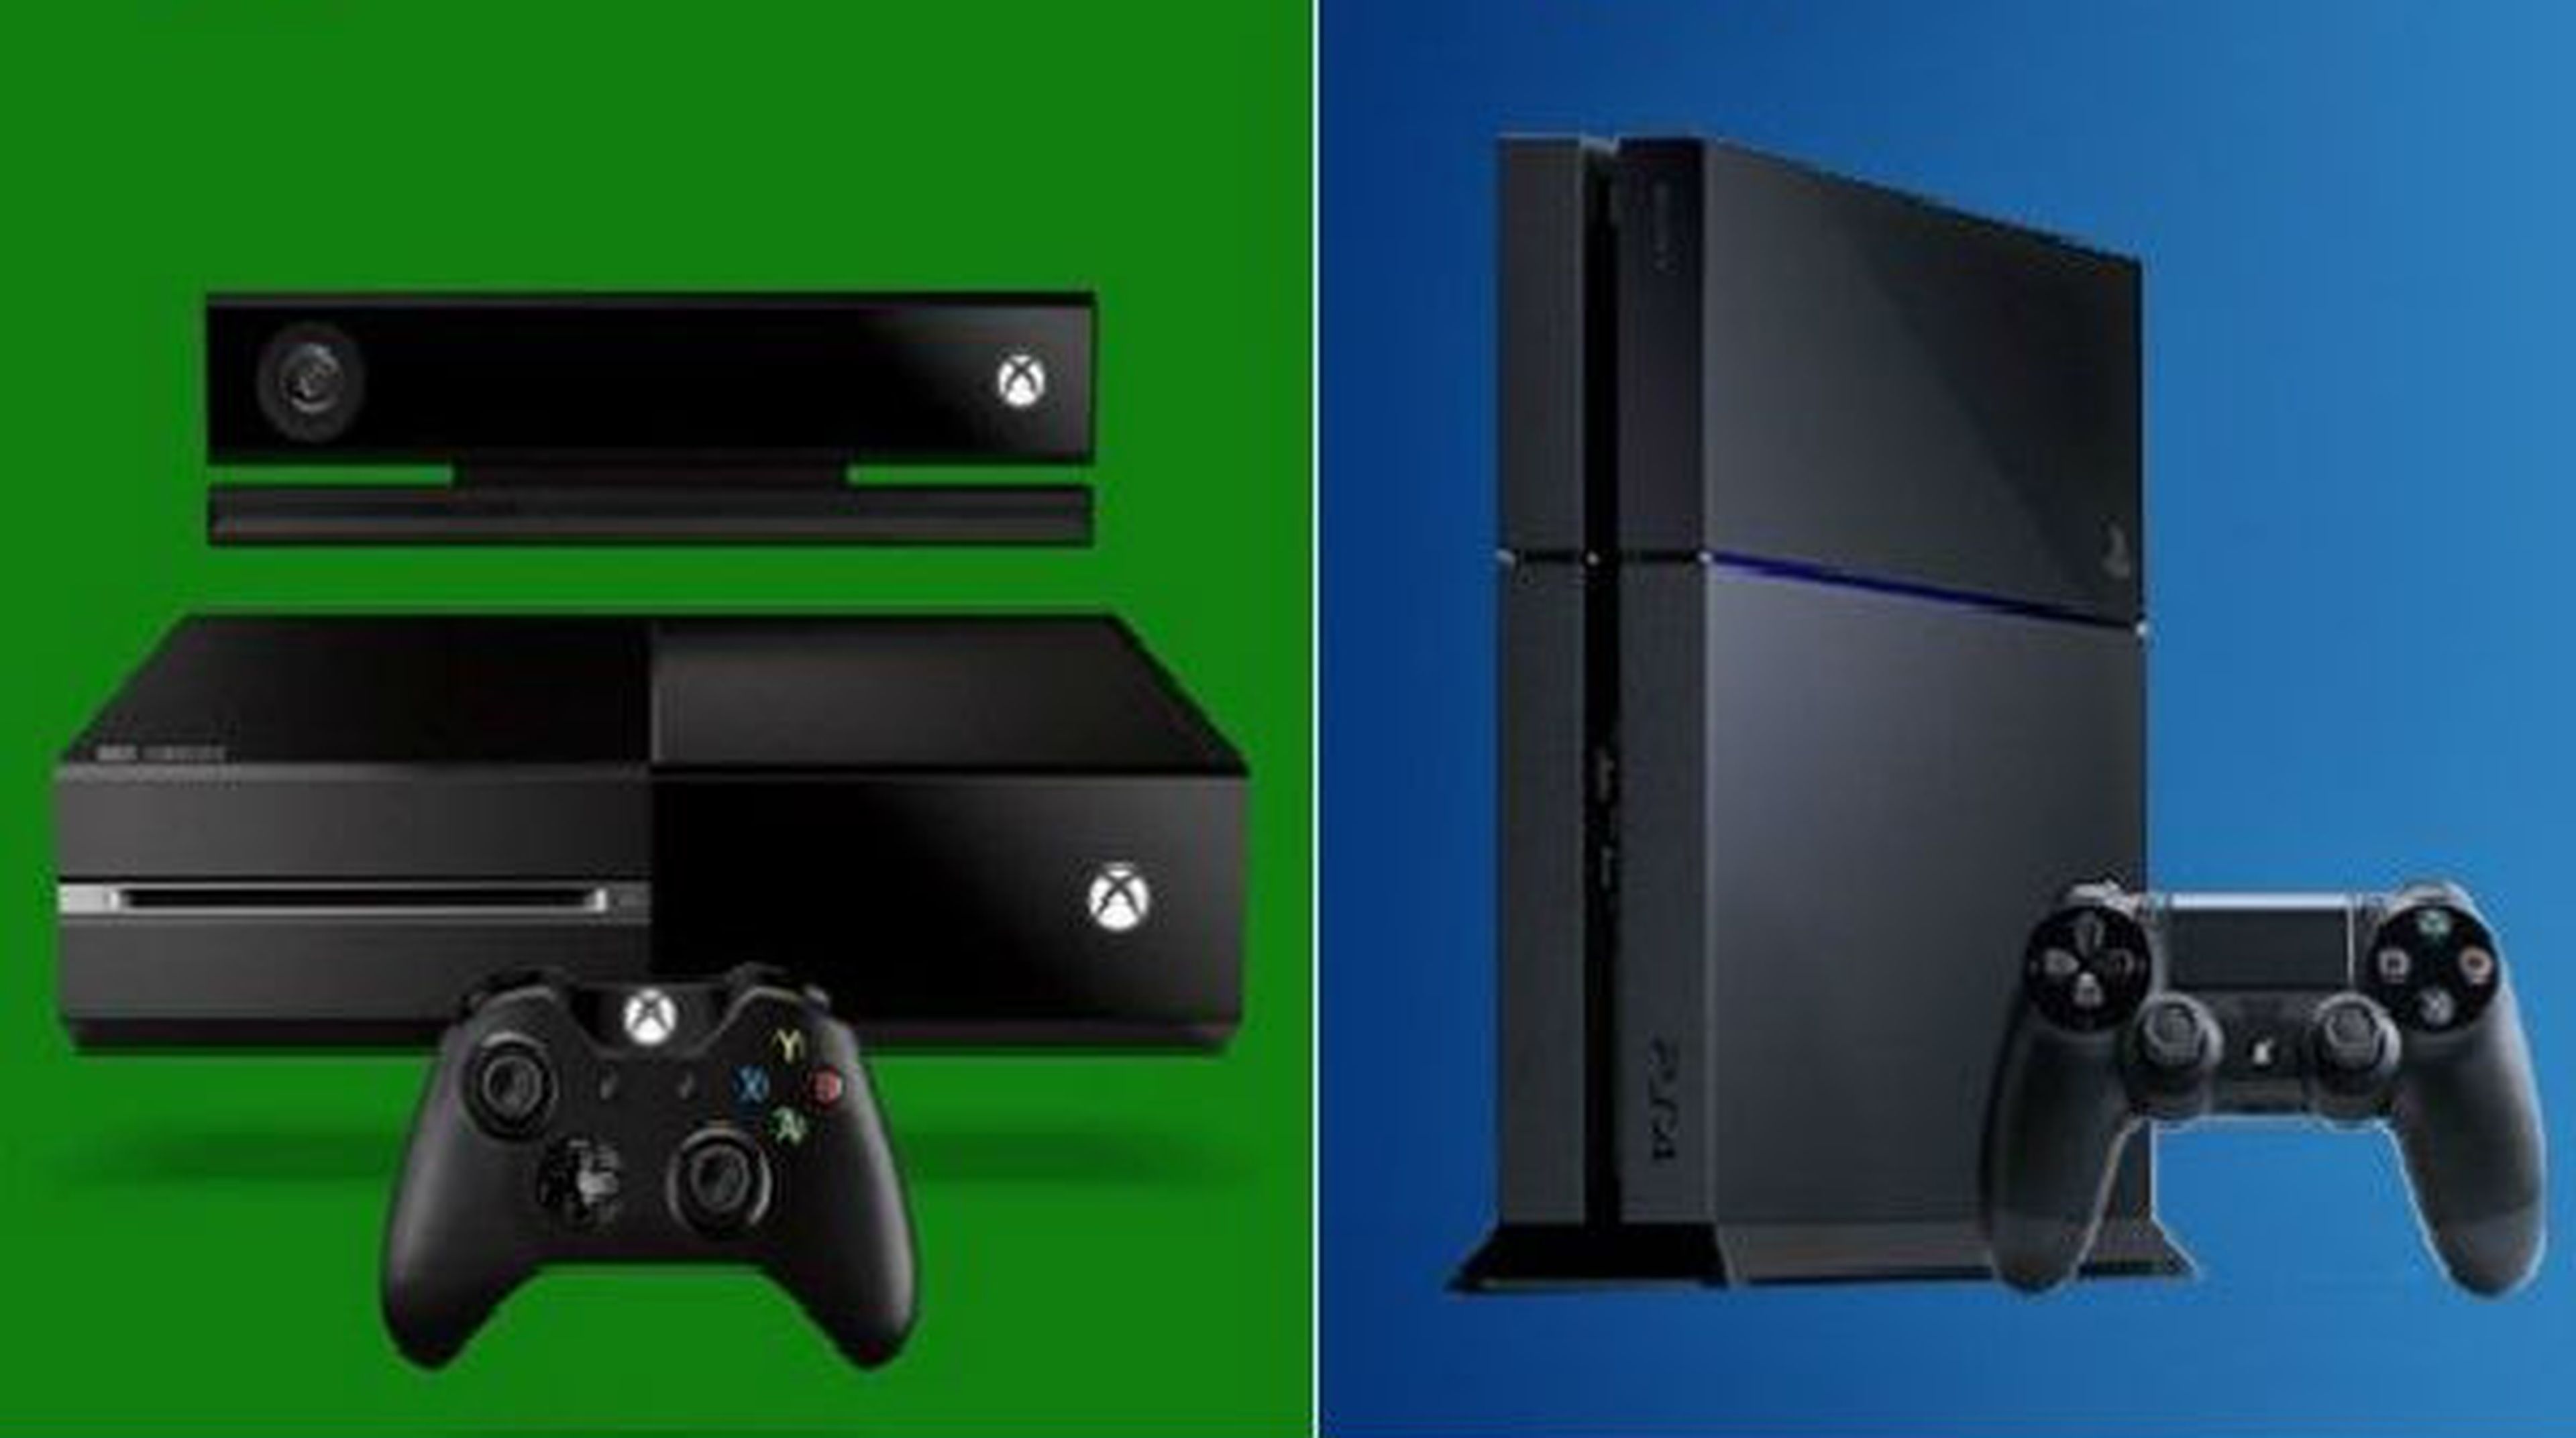 Comparar la velocidad de reloj en Xbox One y PS4 no es lo más fiable